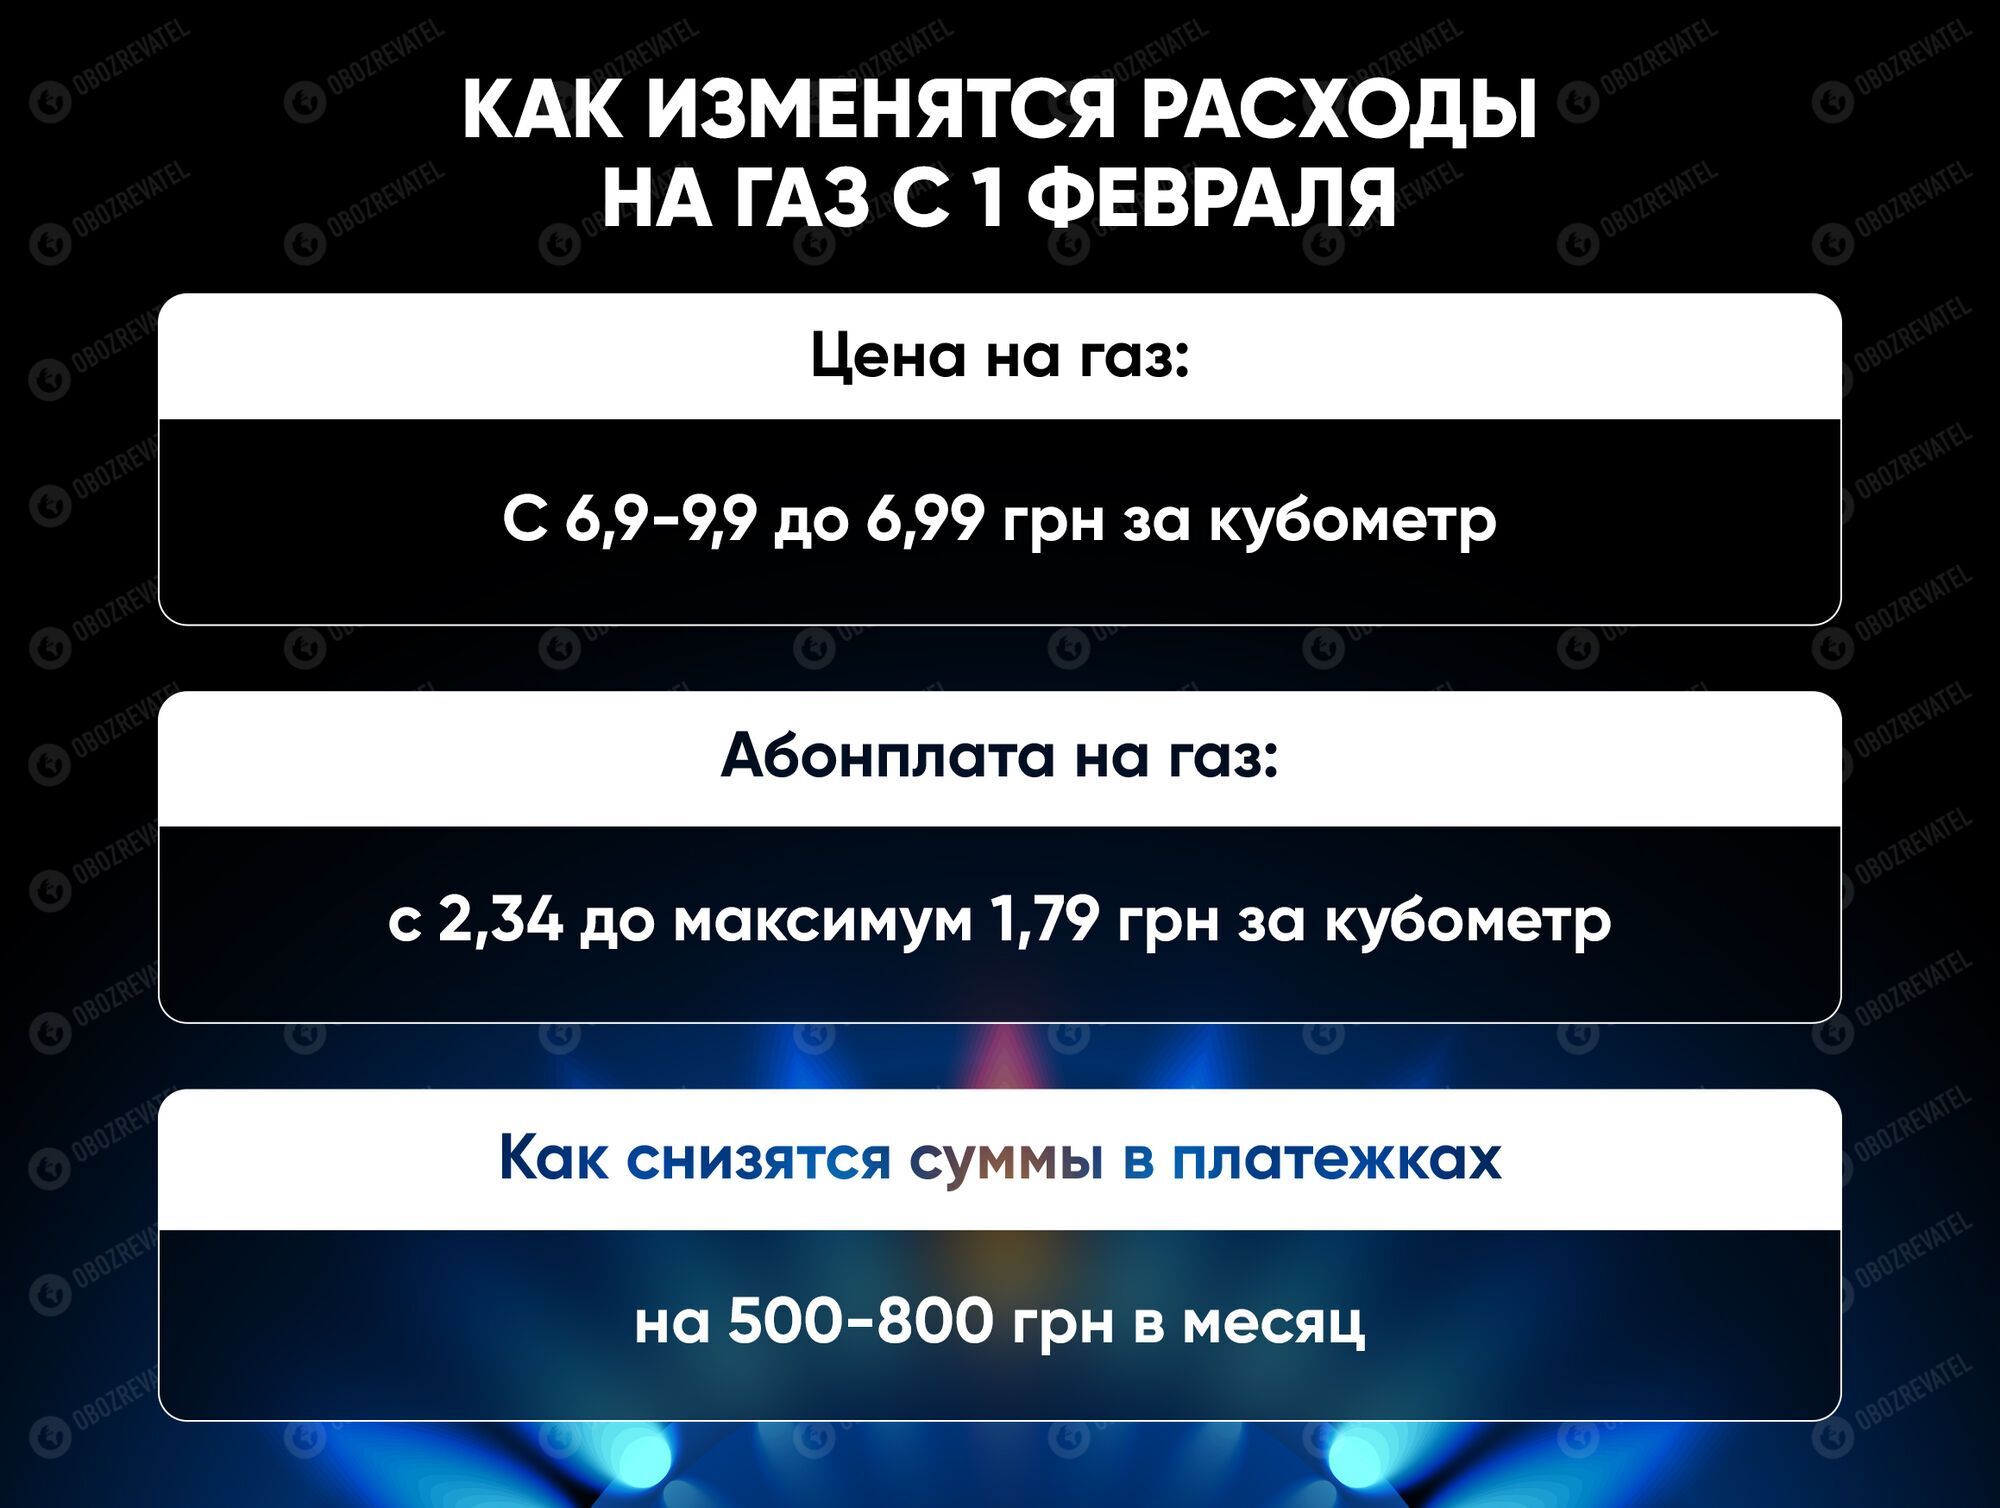 Українцям буде складно сплатити комуналку в лютому, суми в платіжках знизяться в березні, – Вітренко